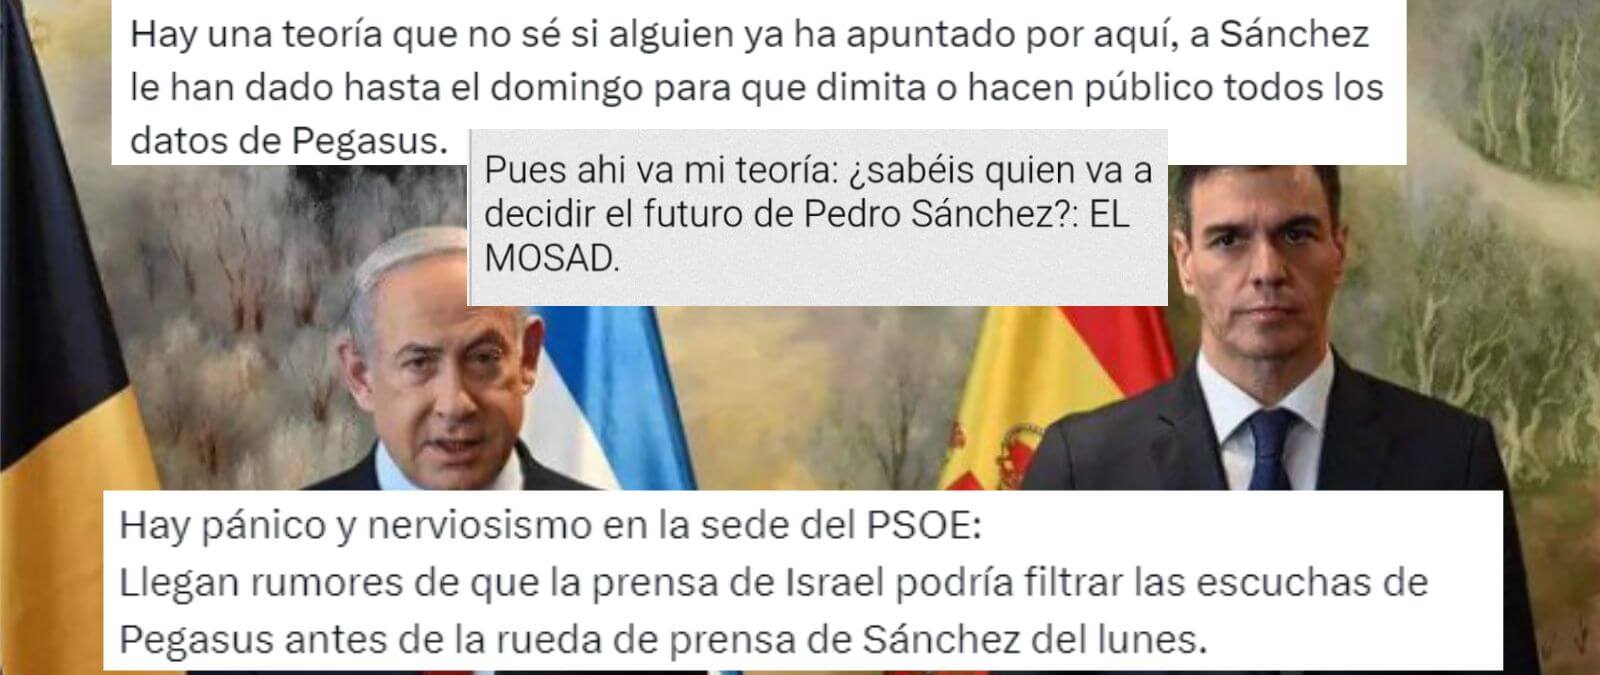 Teorías sin pruebas y desinformaciones difundidas tras la decisión de Pedro Sánchez de cancelar su agenda durante cinco días &quot;para reflexionar&quot;